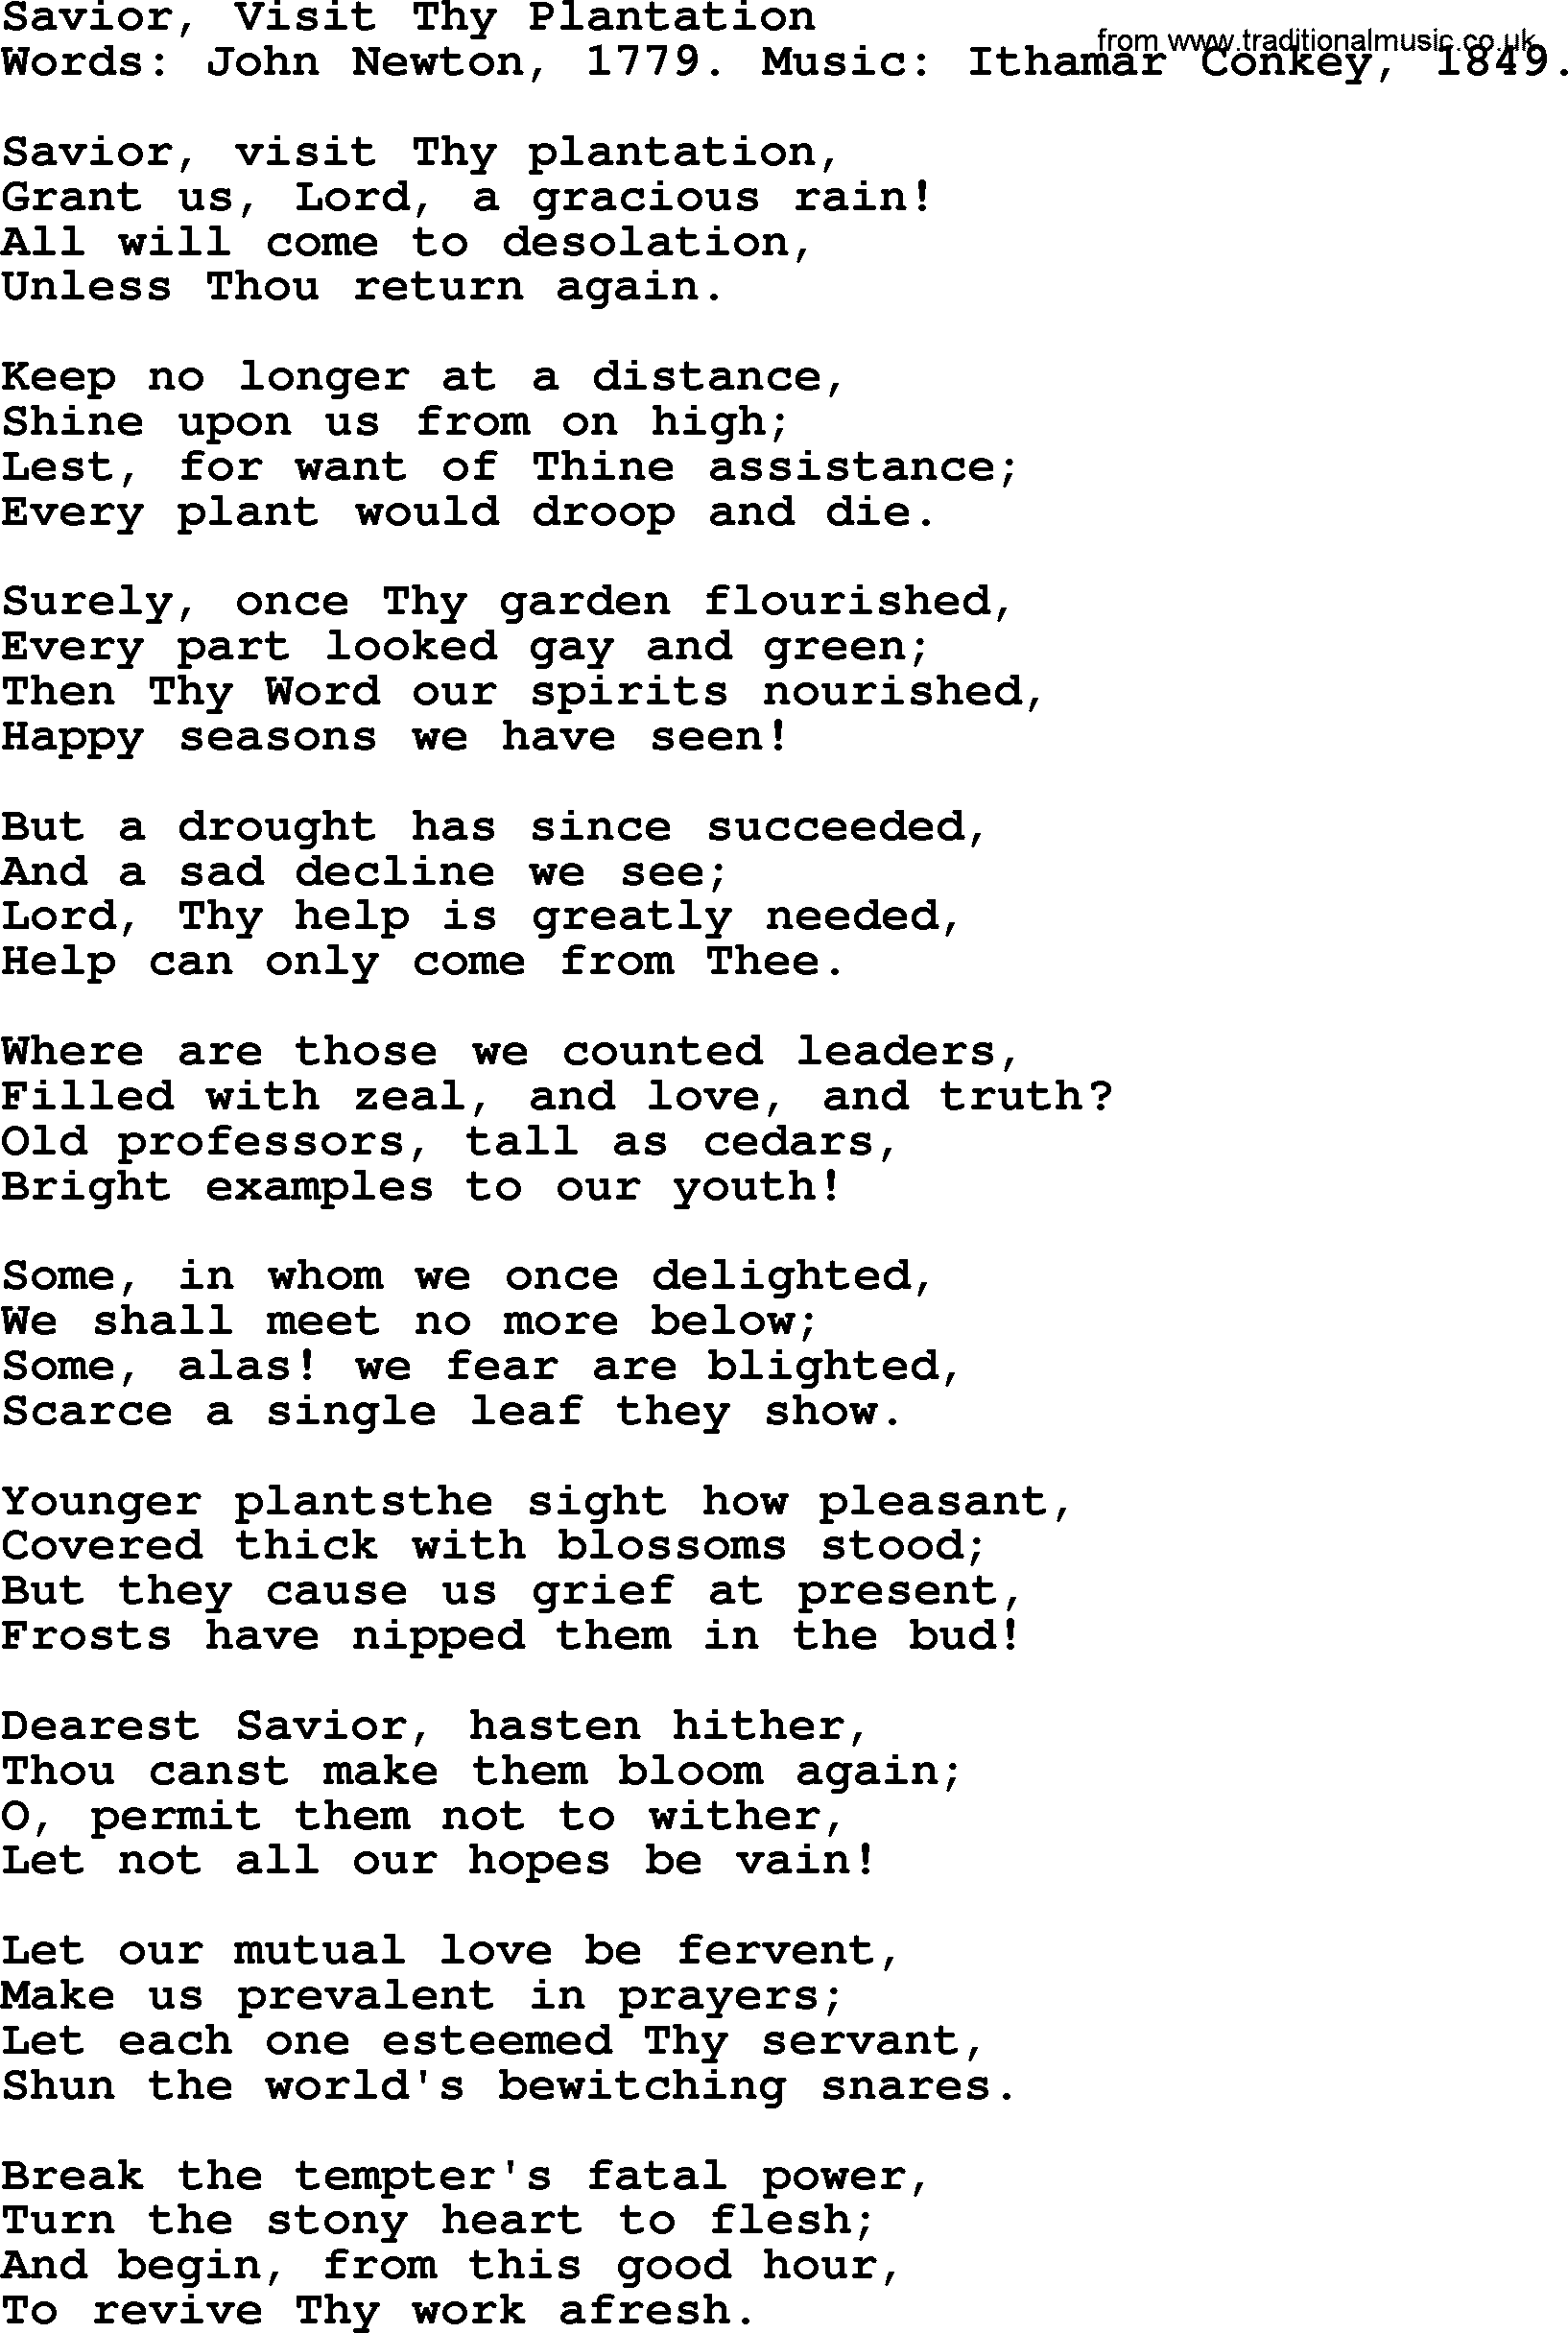 John Newton hymn: Savior, Visit Thy Plantation, lyrics